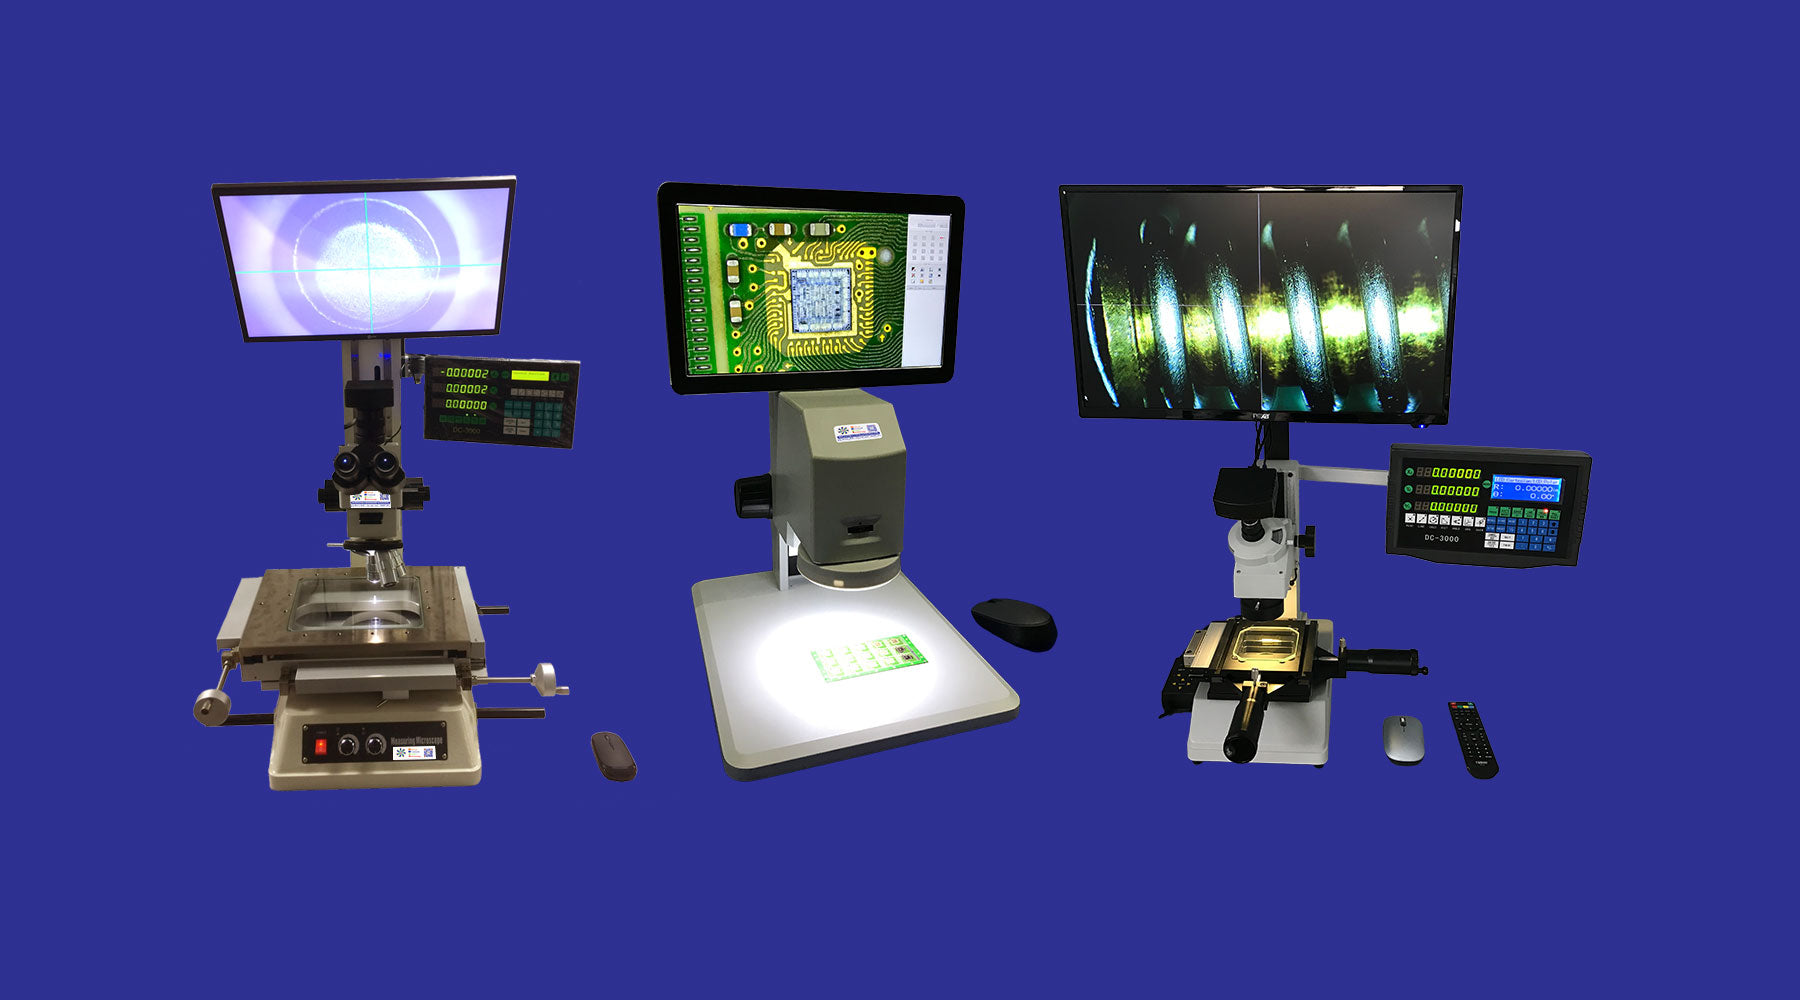 mmbtz45x-hd-digital-measurement-microscopes-tool-scopes-xy-xyz